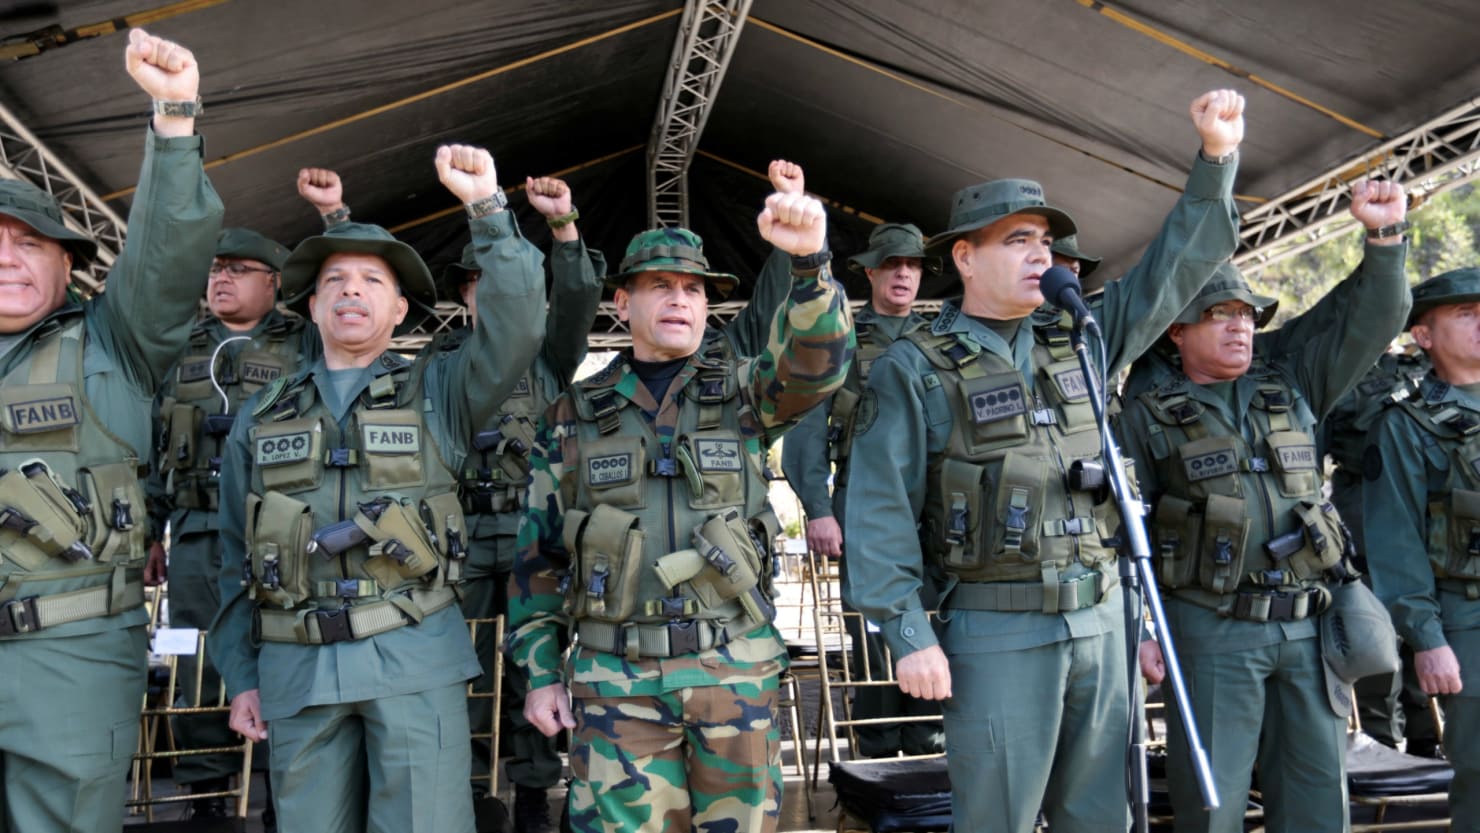 ونزوئلا در پاسخ به تهدیدهای ترامپ رزمایش نظامی برگزار کرد